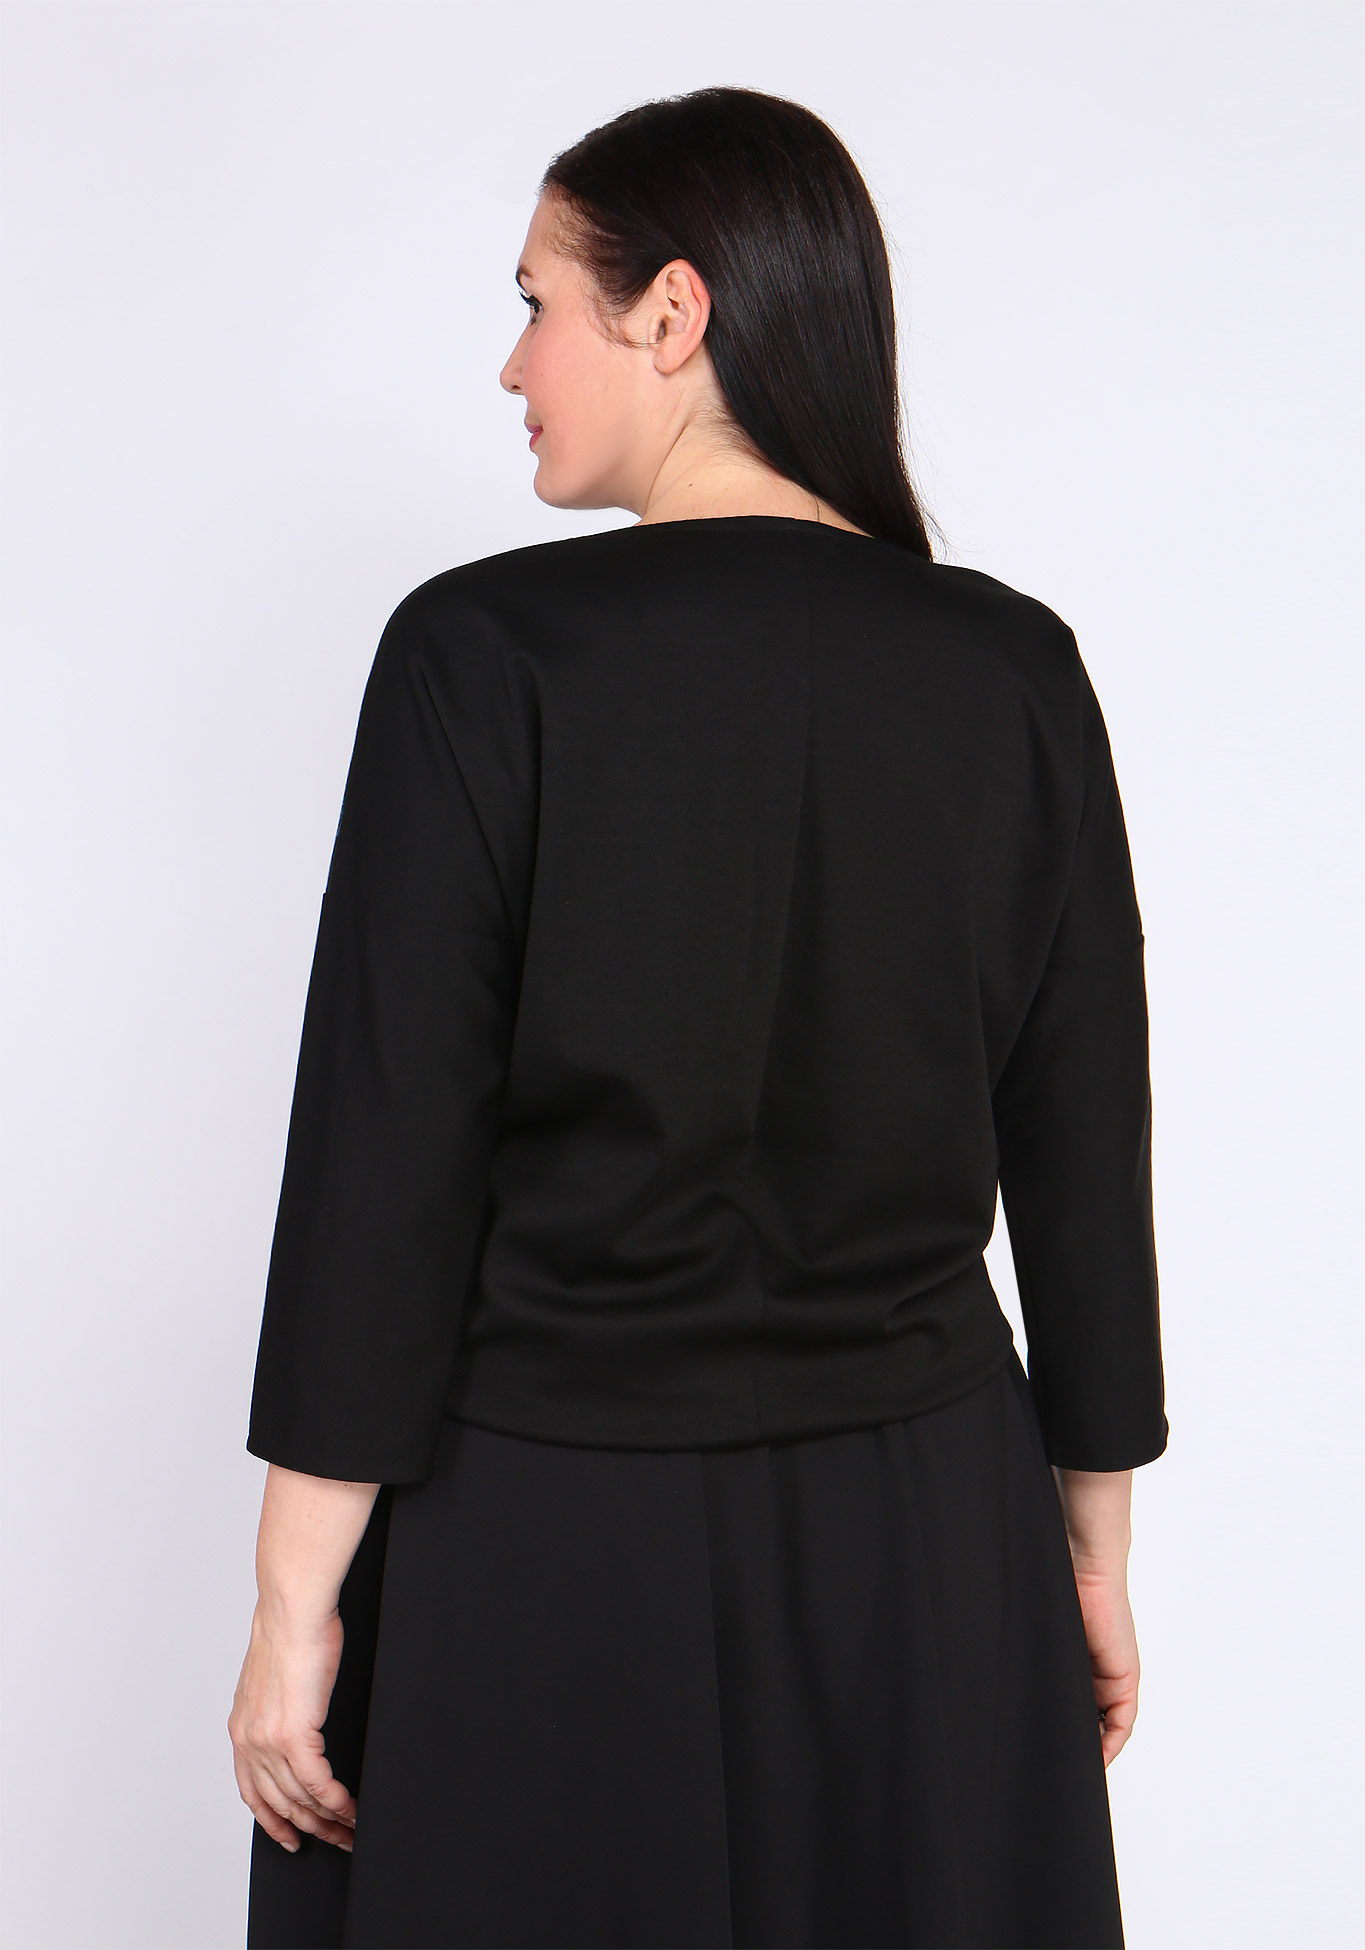 Блузка с принтом и рукавом летучая мышь Bianka Modeno, размер 48, цвет чёрный - фото 4